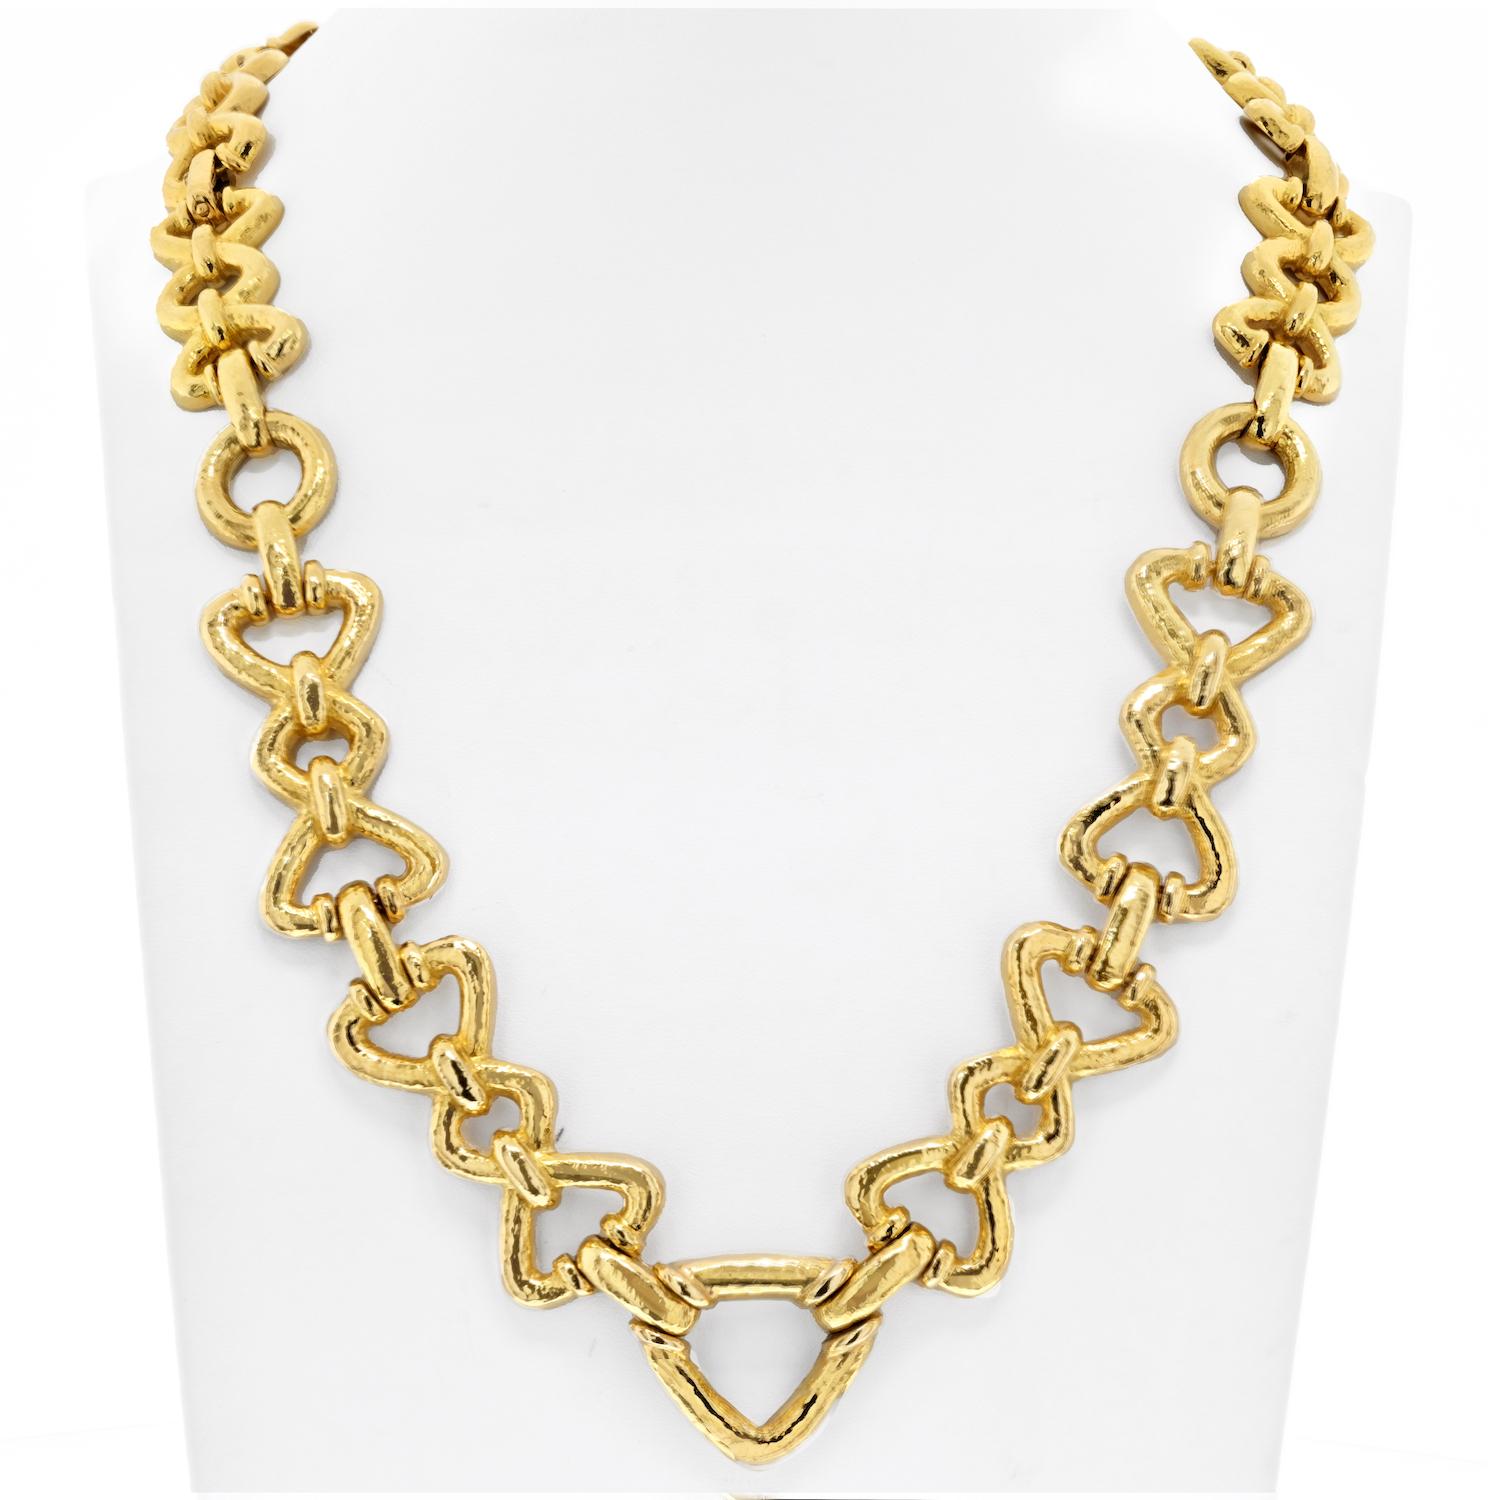 Die David Webb 18K Yellow Gold Long Chain Link Necklace ist ein Meisterwerk von zeitloser Eleganz und Vielseitigkeit. Diese exquisite, mit viel Liebe zum Detail gefertigte Halskette besteht aus einer Reihe von gehämmerten und hochglanzpolierten